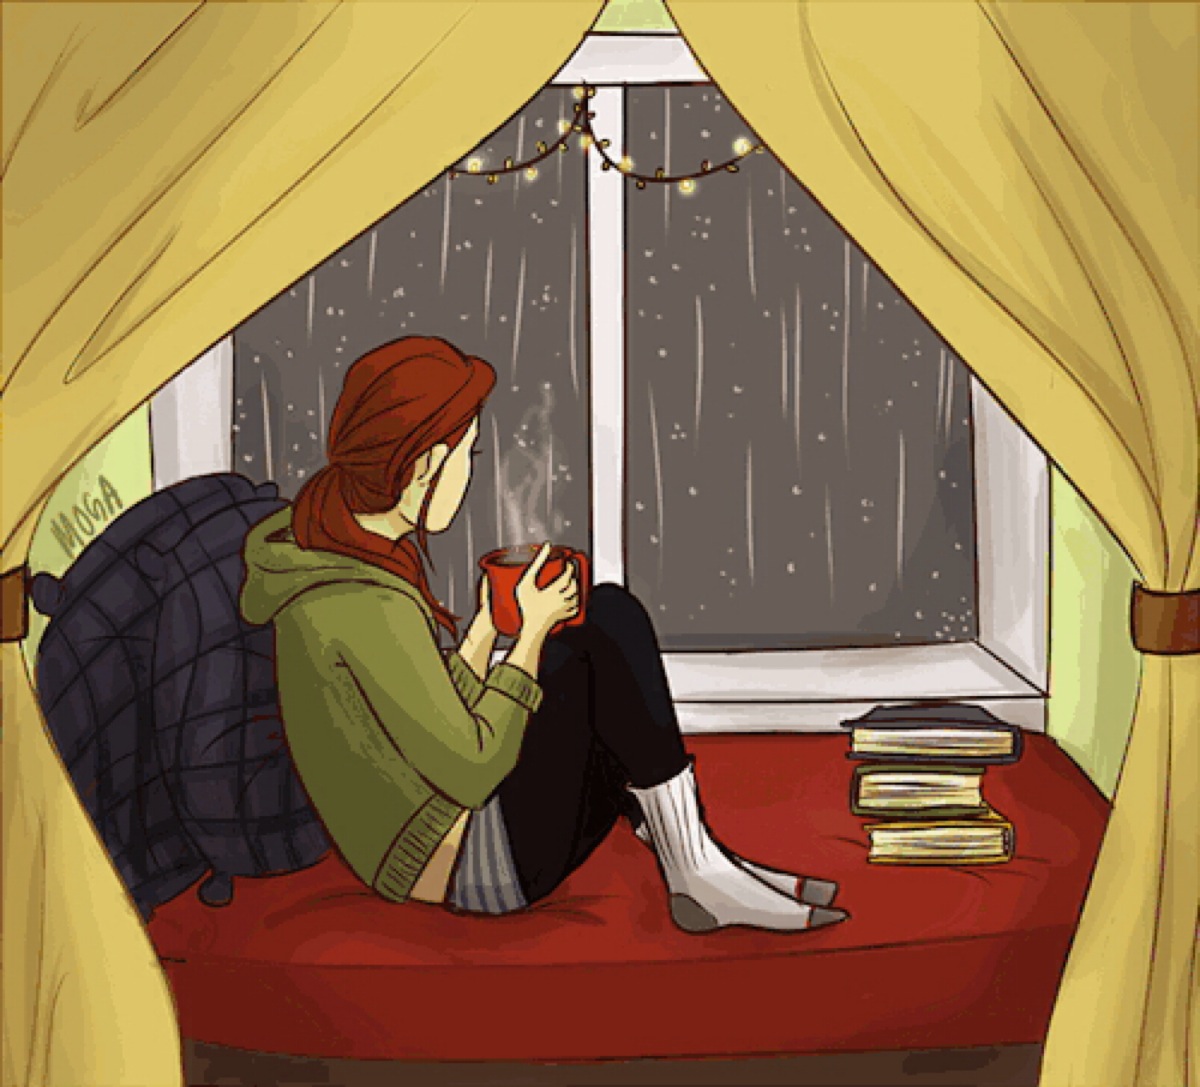 坐在窗前,喝一杯暖暖的花草,看着窗外绵绵的秋雨,思绪漫漫,一份属于